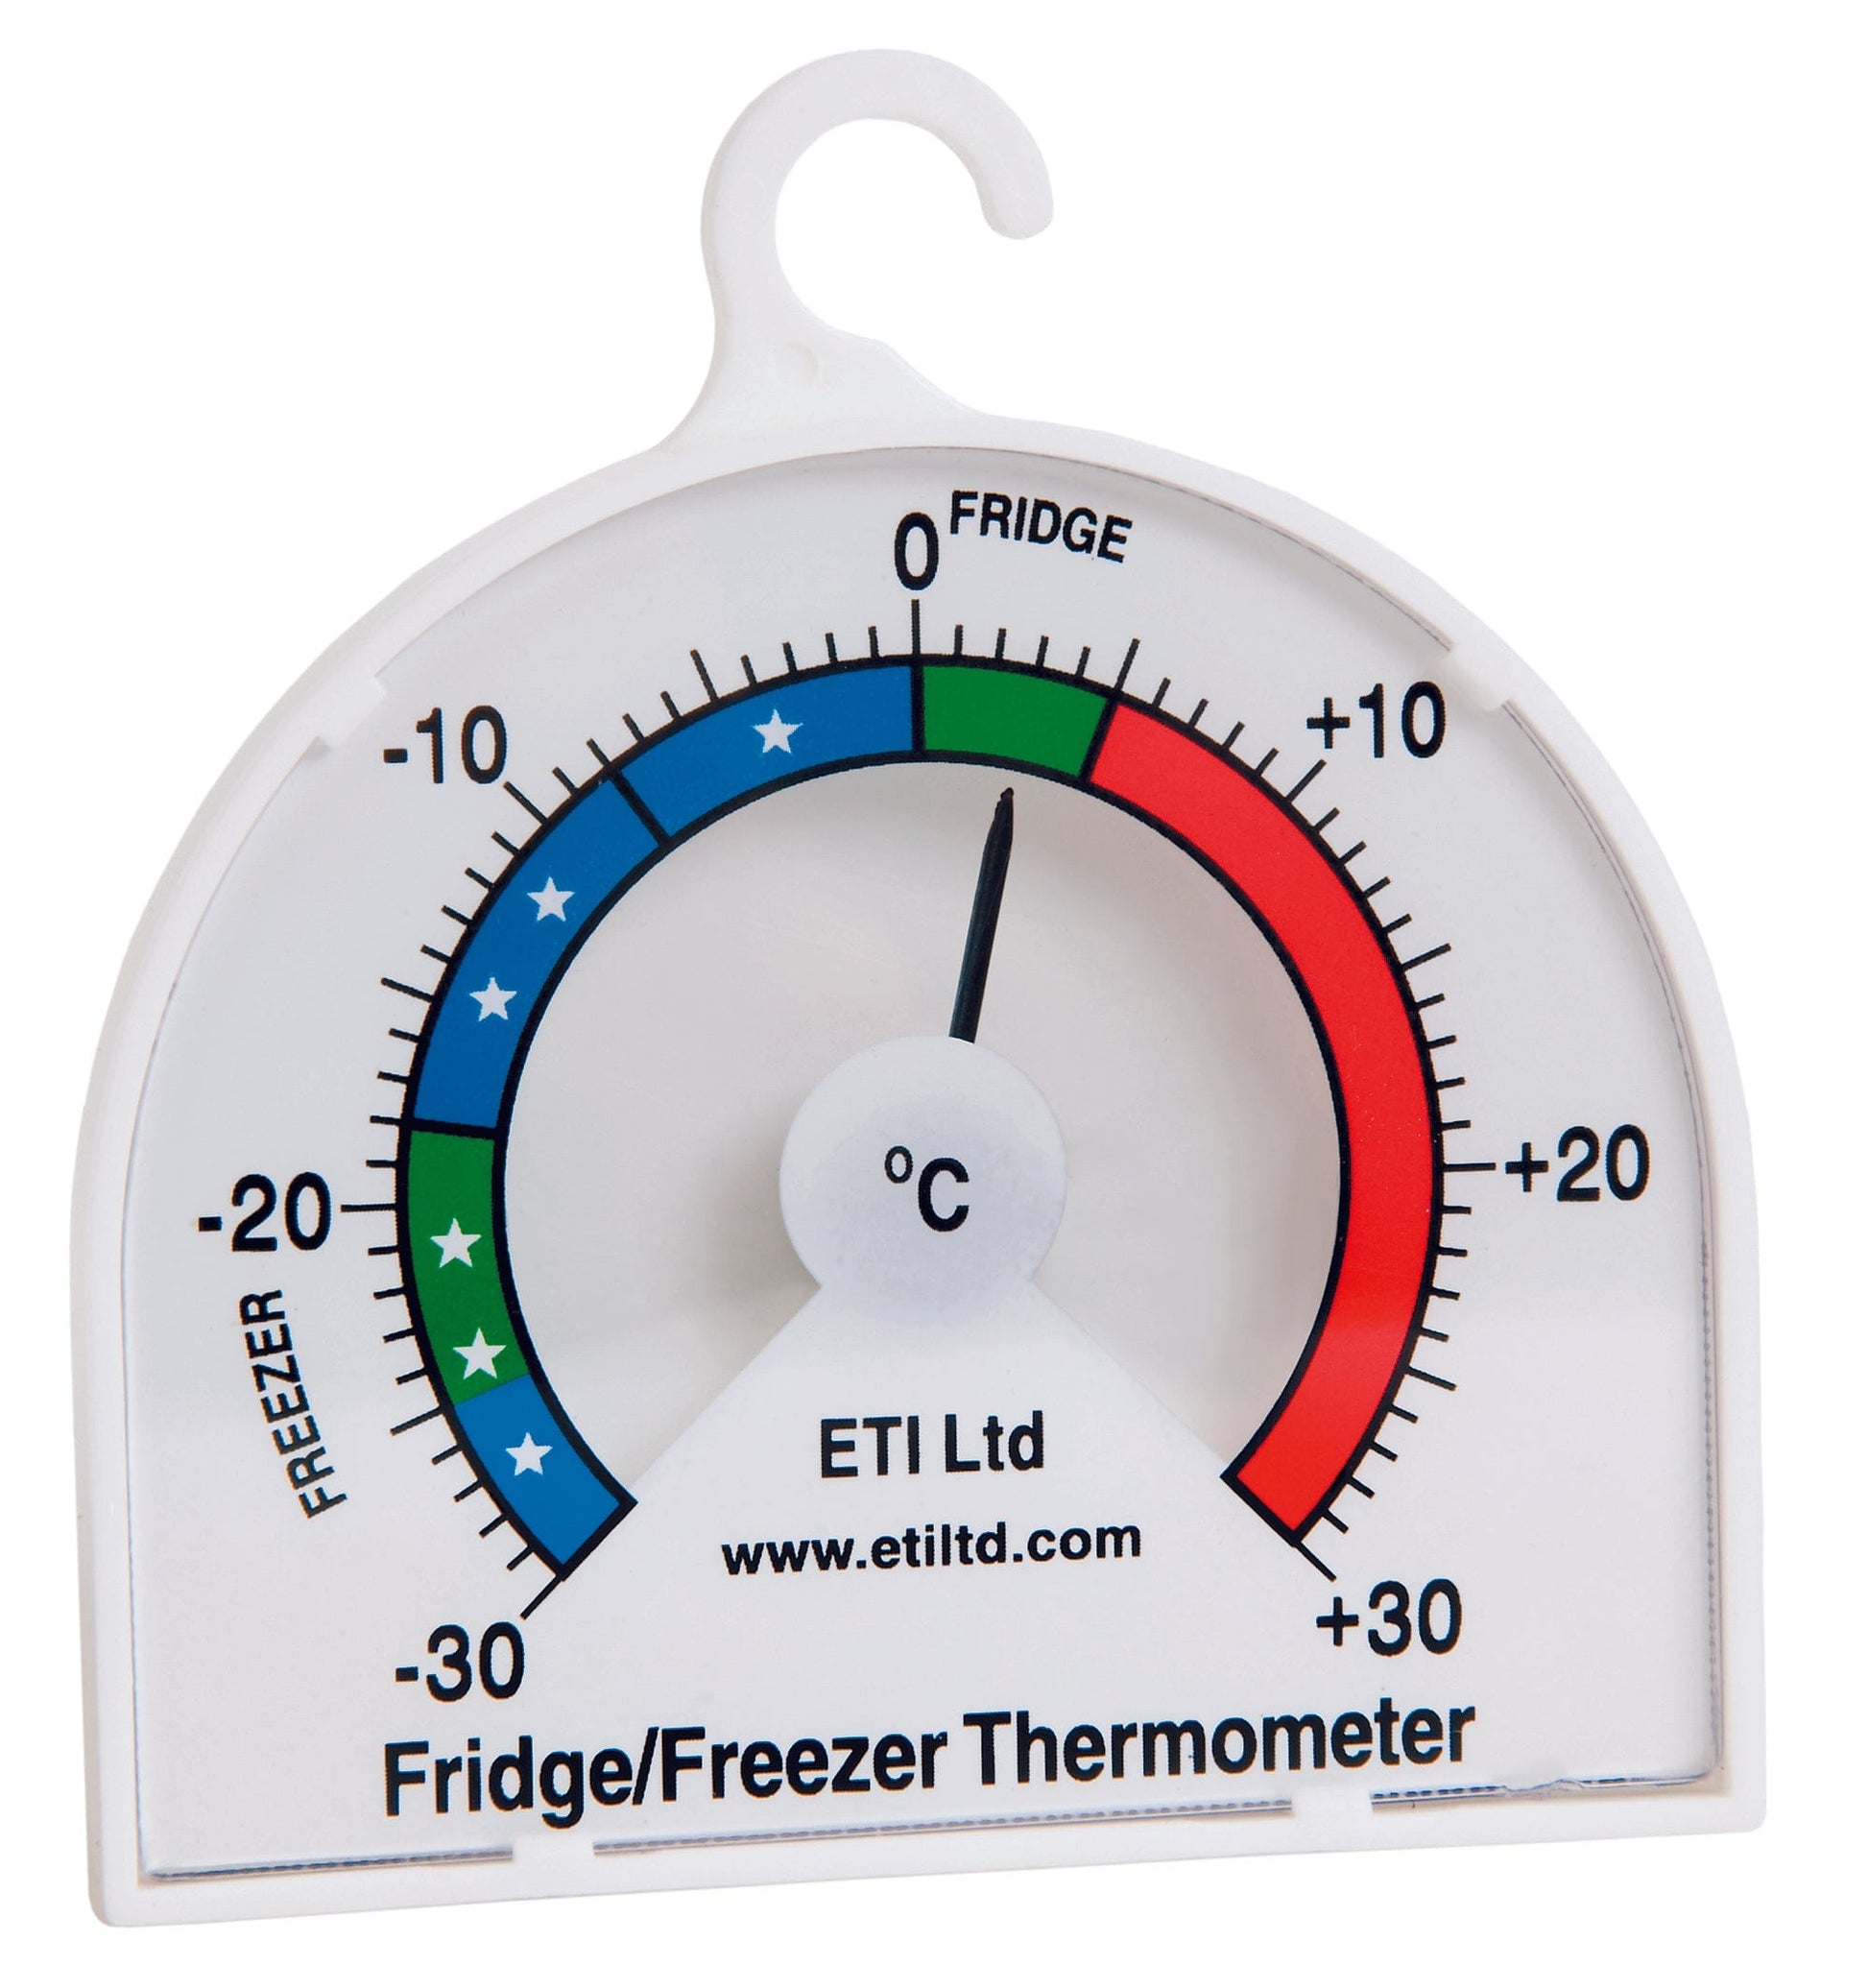 Thermomètre Analogique de Réfrigérateur & Congélateur, Thermometre de Frigo